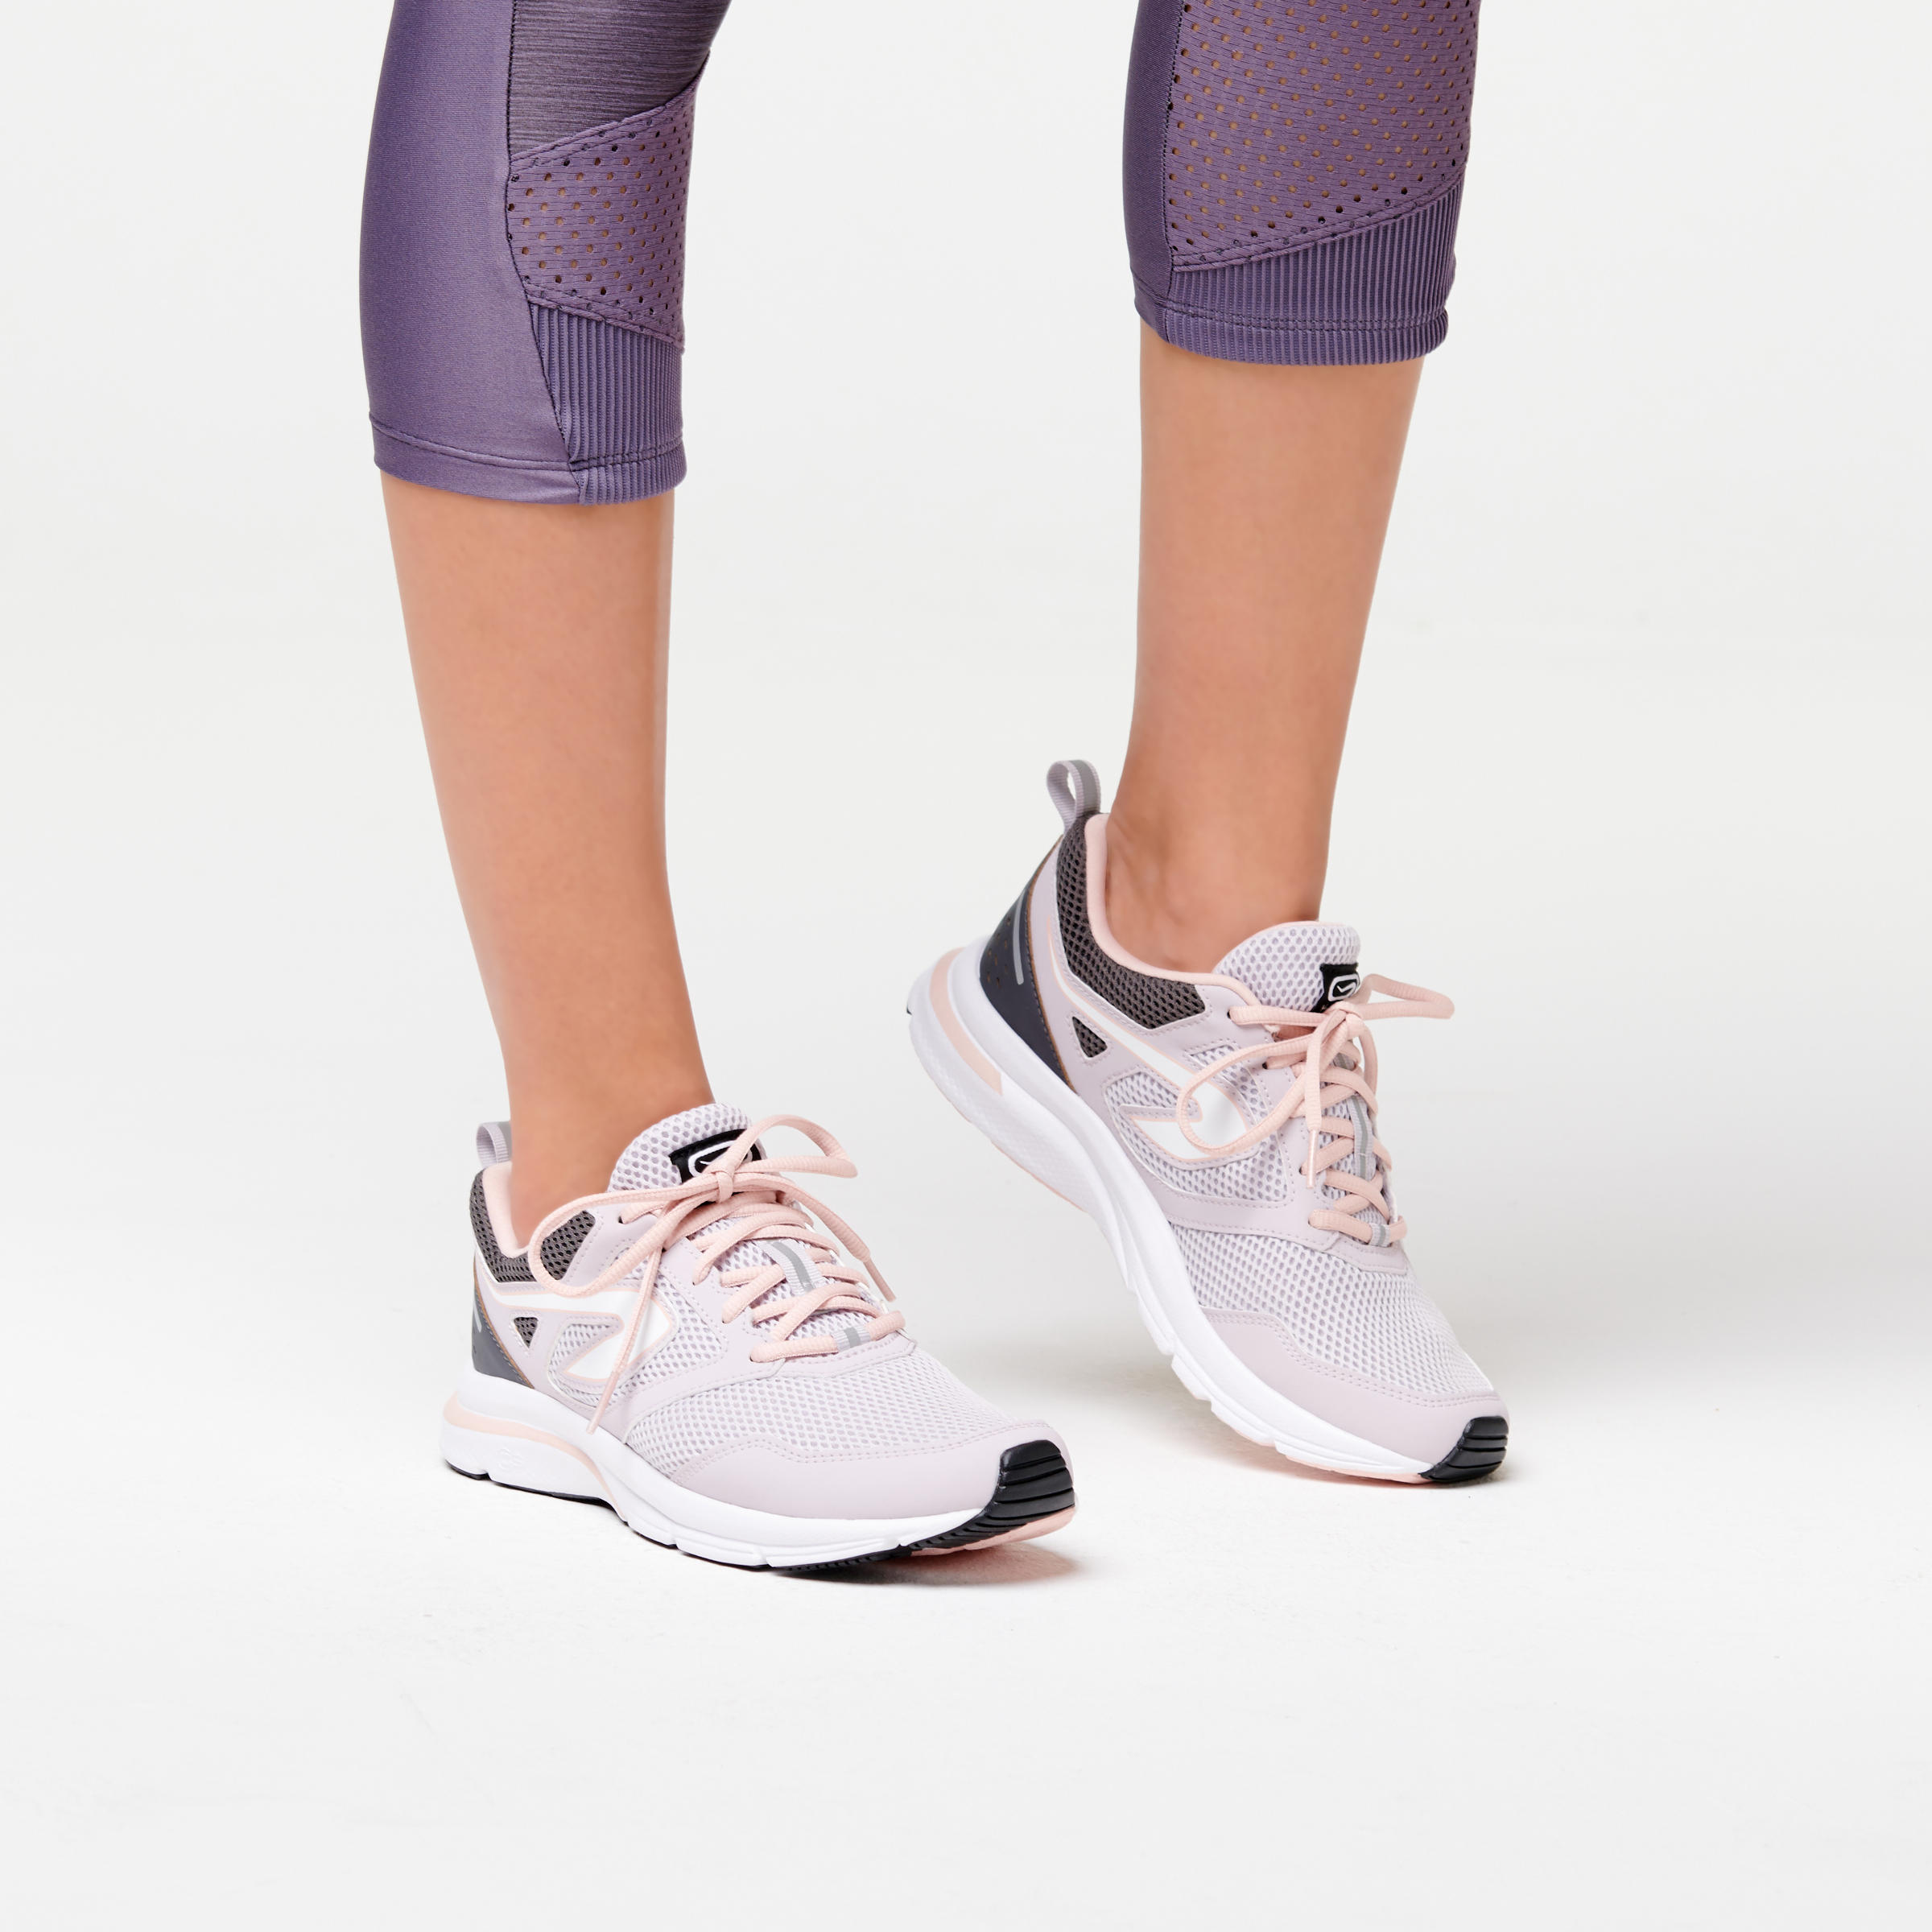 Women's Running Shoes – Run Active Grey - KALENJI